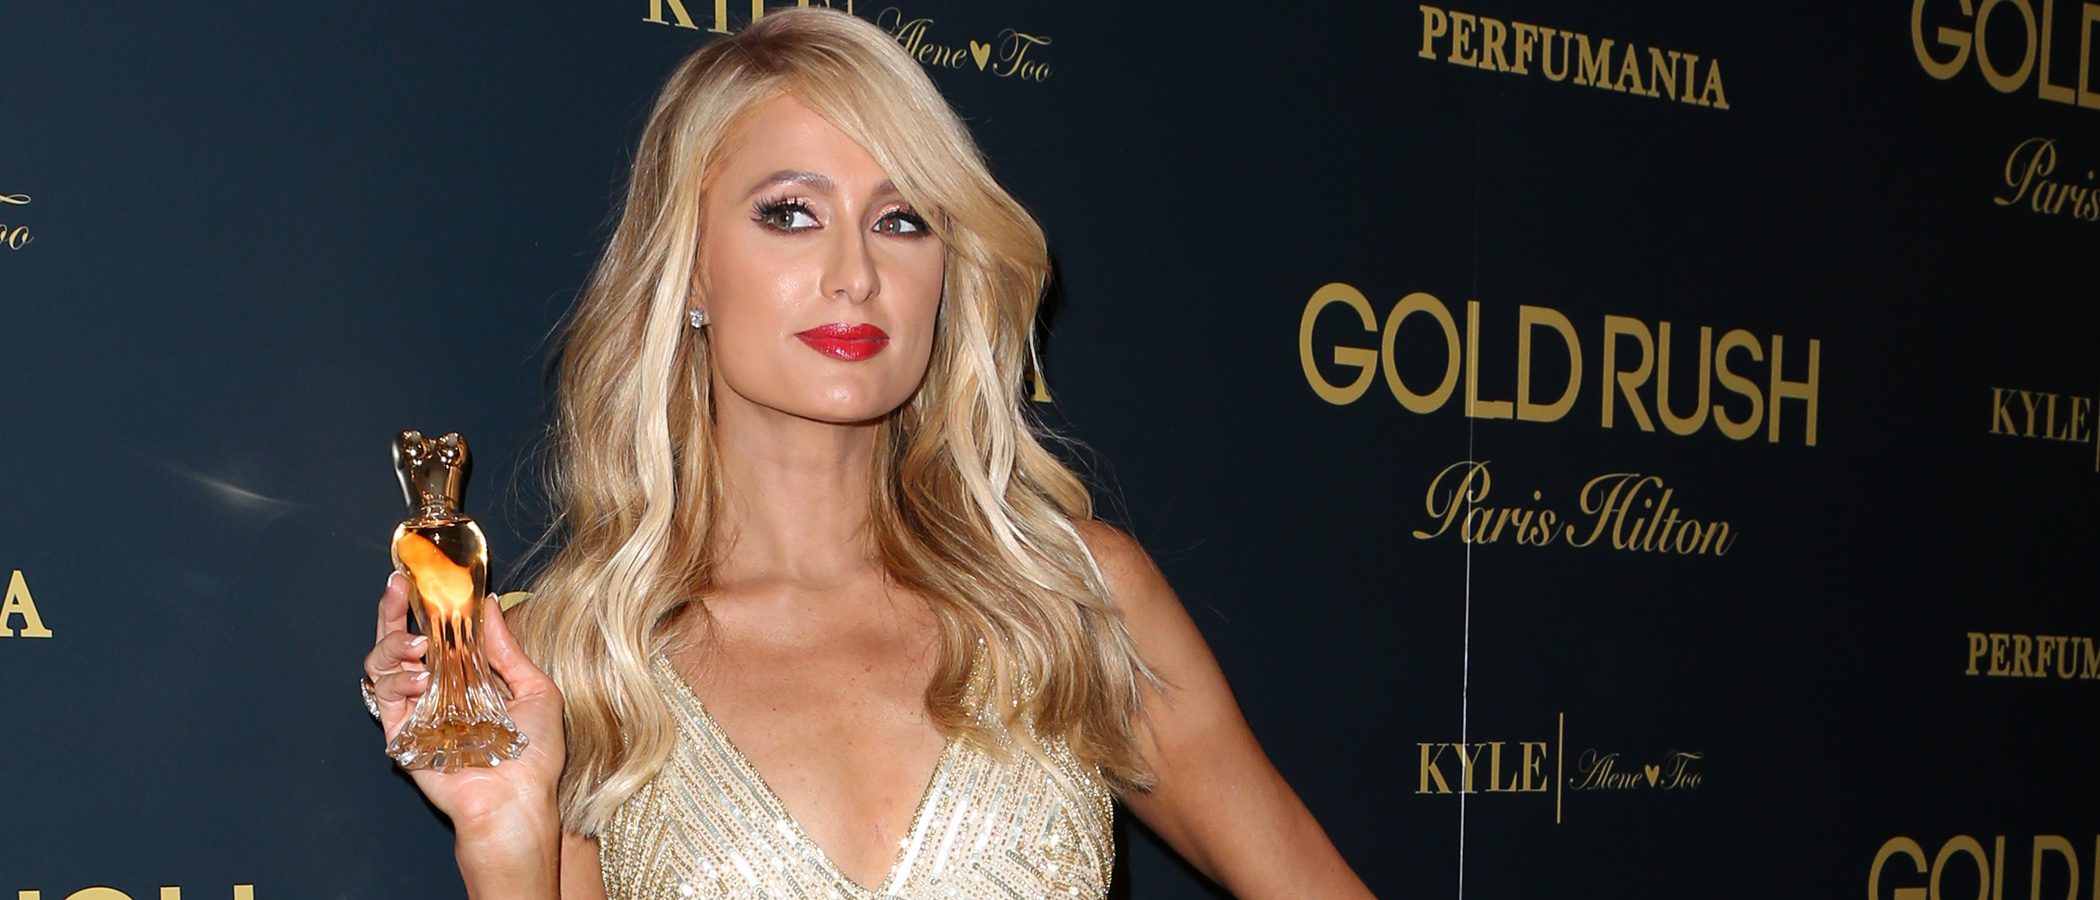 Báñate en oro con 'Gold Rush', la exquisita fragancia de Paris Hilton